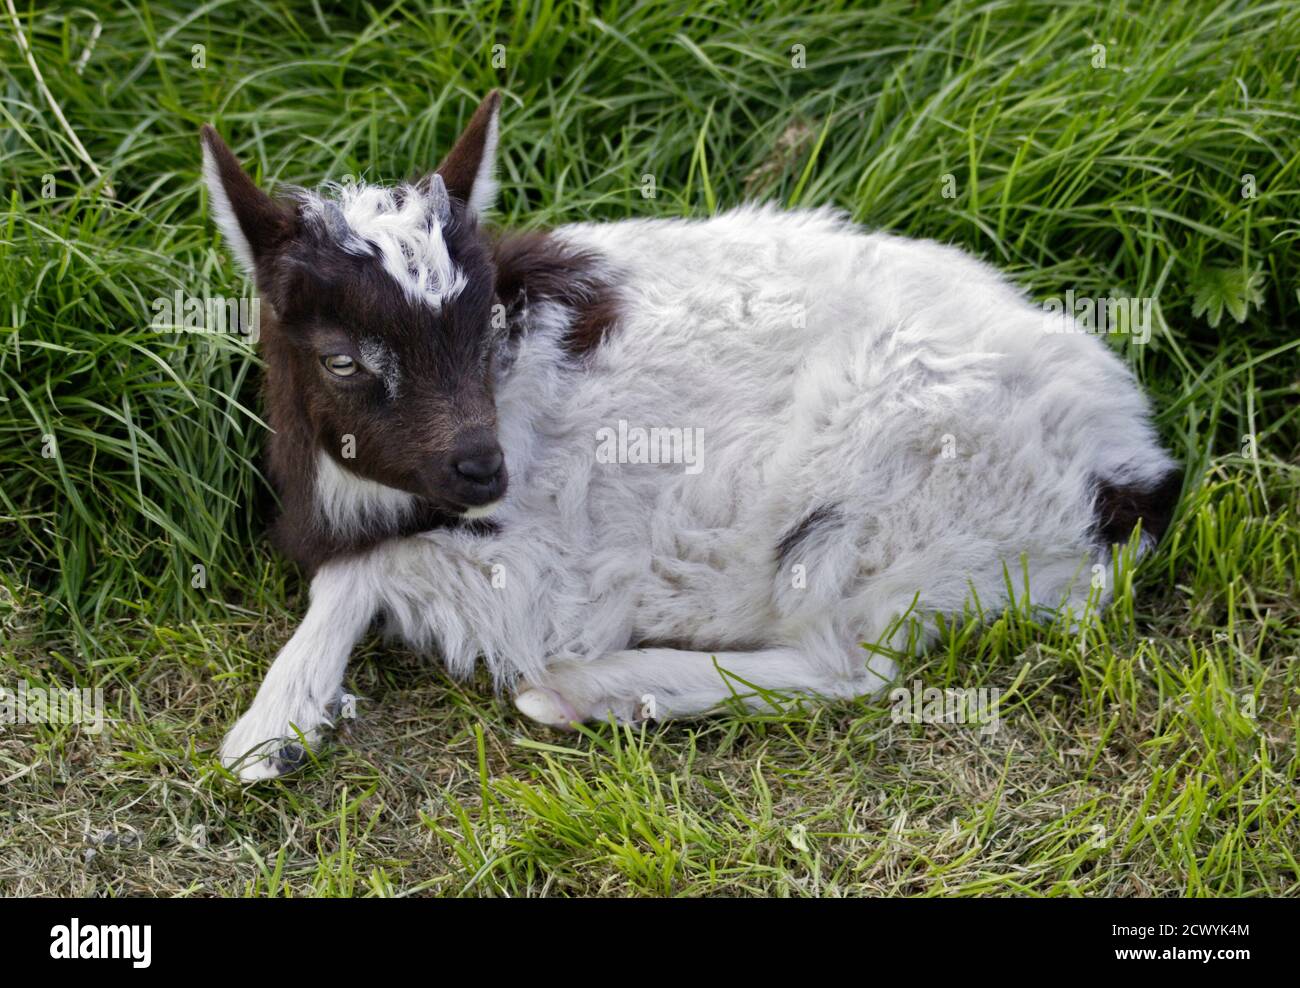 Goat juvenile (Kid) Stock Photo